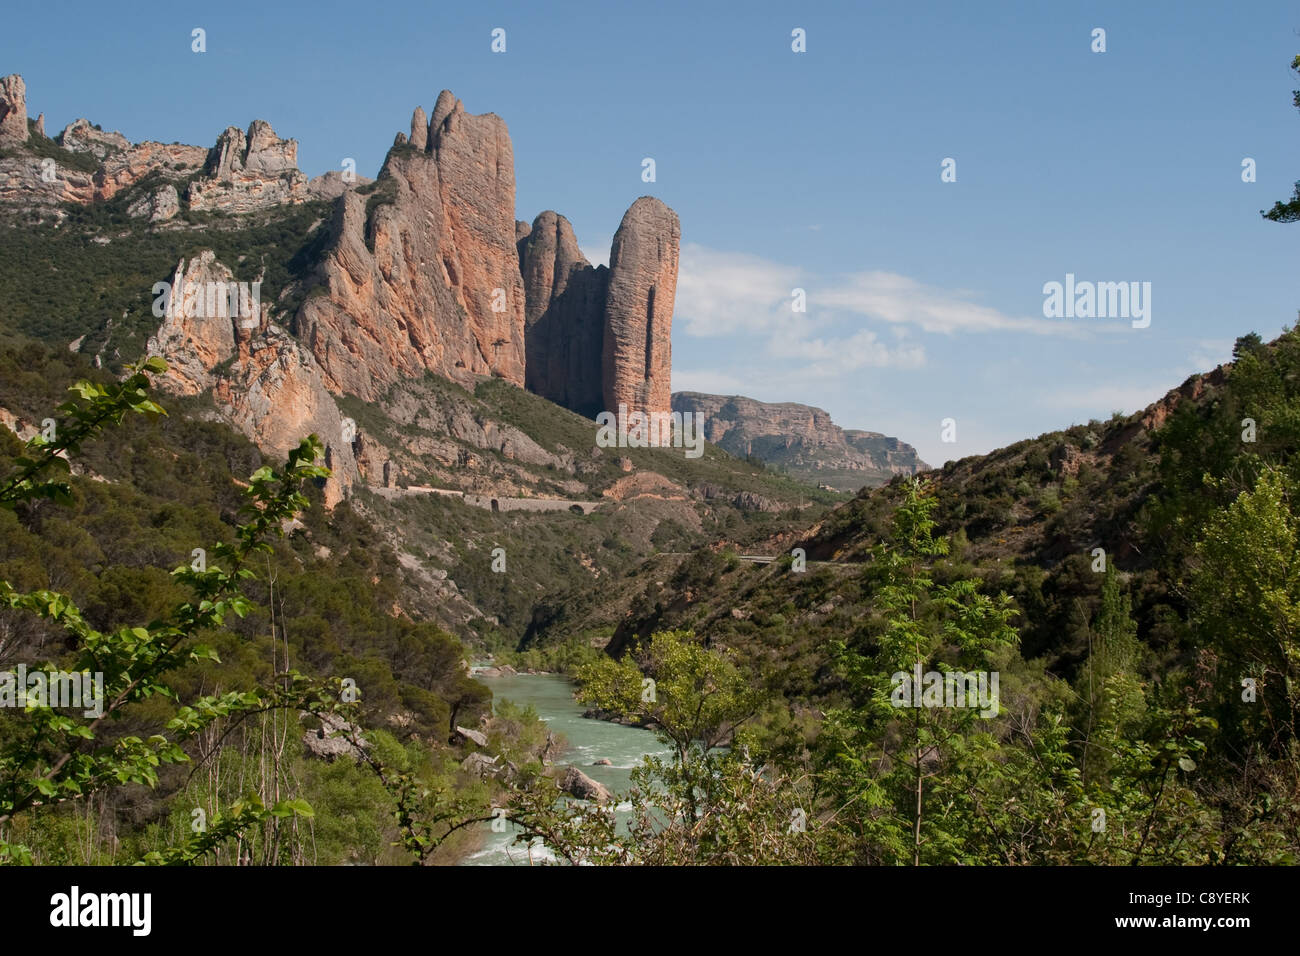 Rock spires at Los Mallos de Riglos, Aragon, Spain Stock Photo